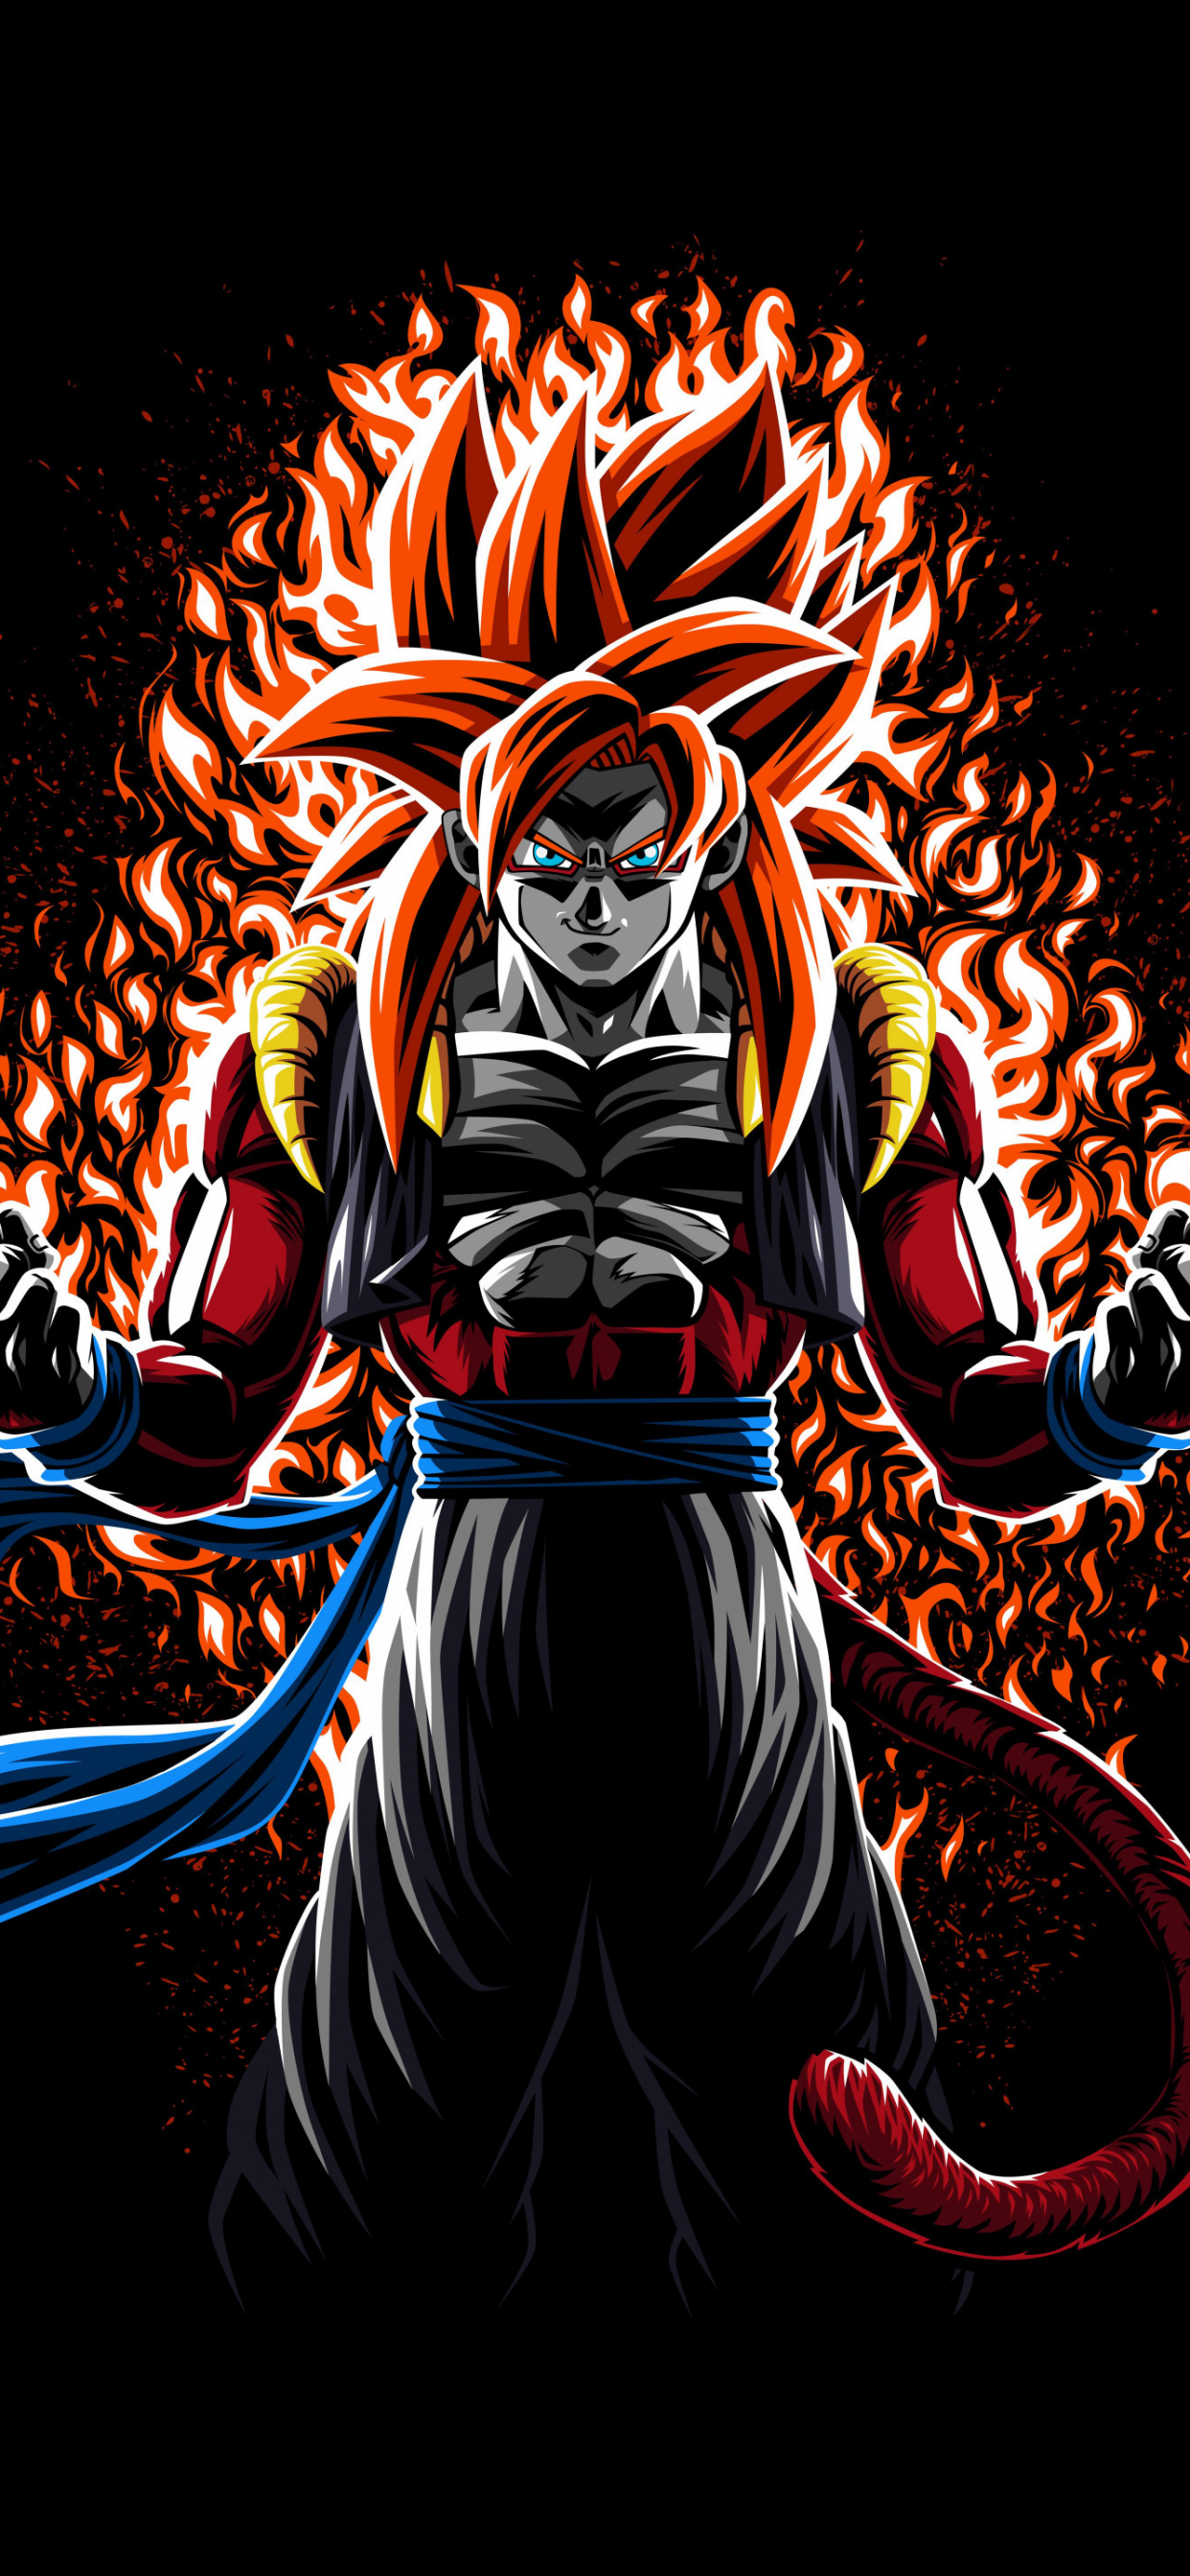 Super Saiyan 3 Goku HD Wallpaper  rDragonballLegends